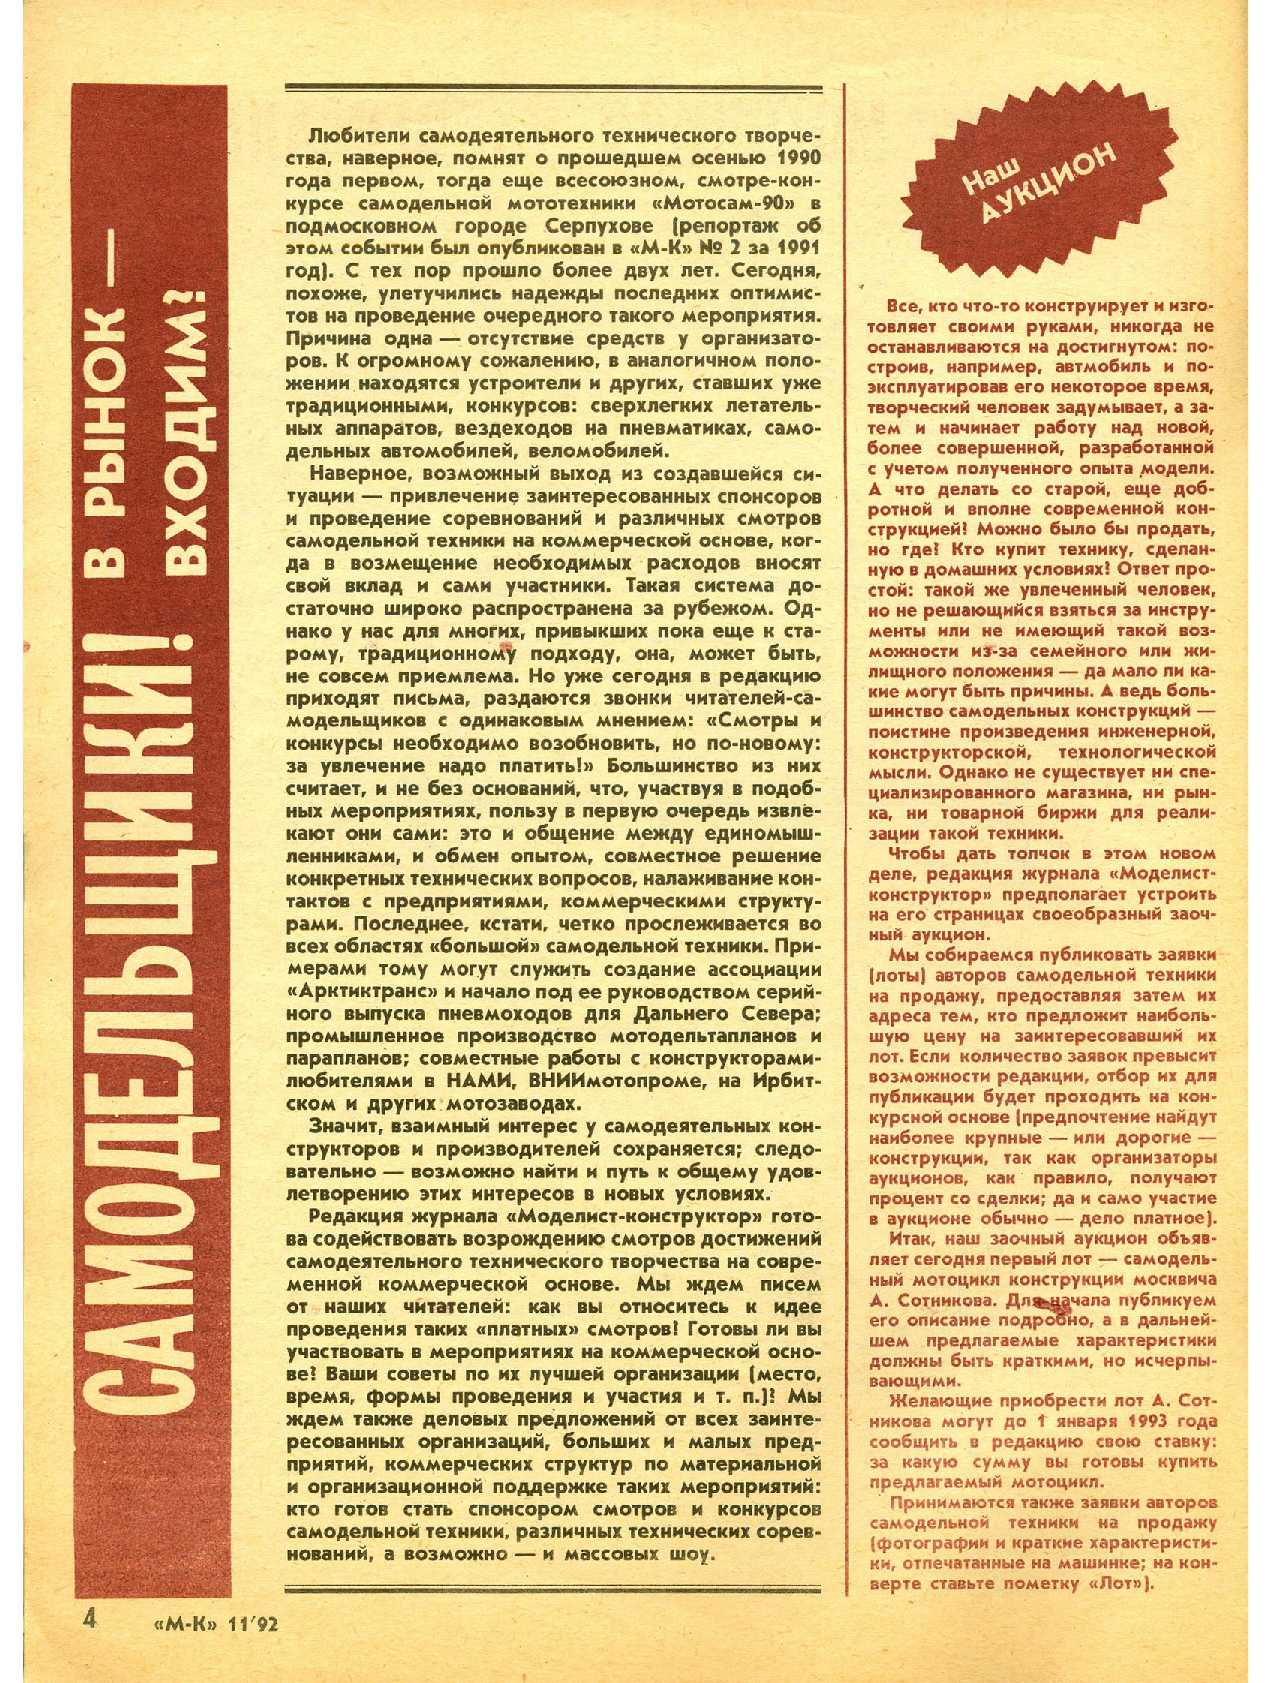 МК 11, 1992, 4 c.